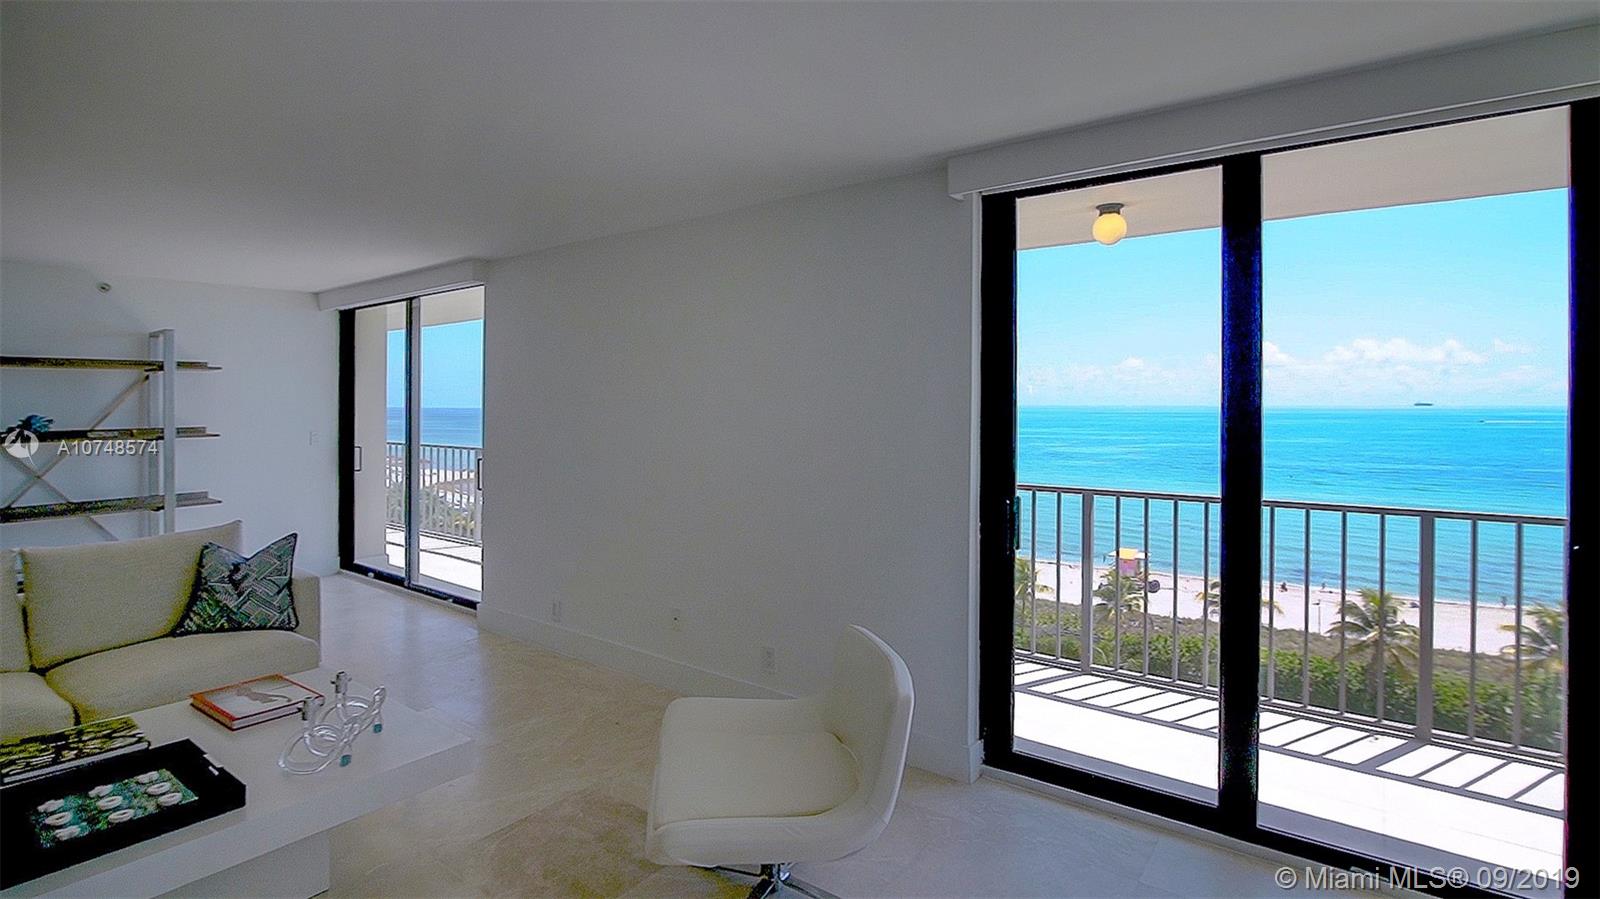 Oceanfront Plaza Unit #907 Condo for Sale in South Beach - Miami Beach ...